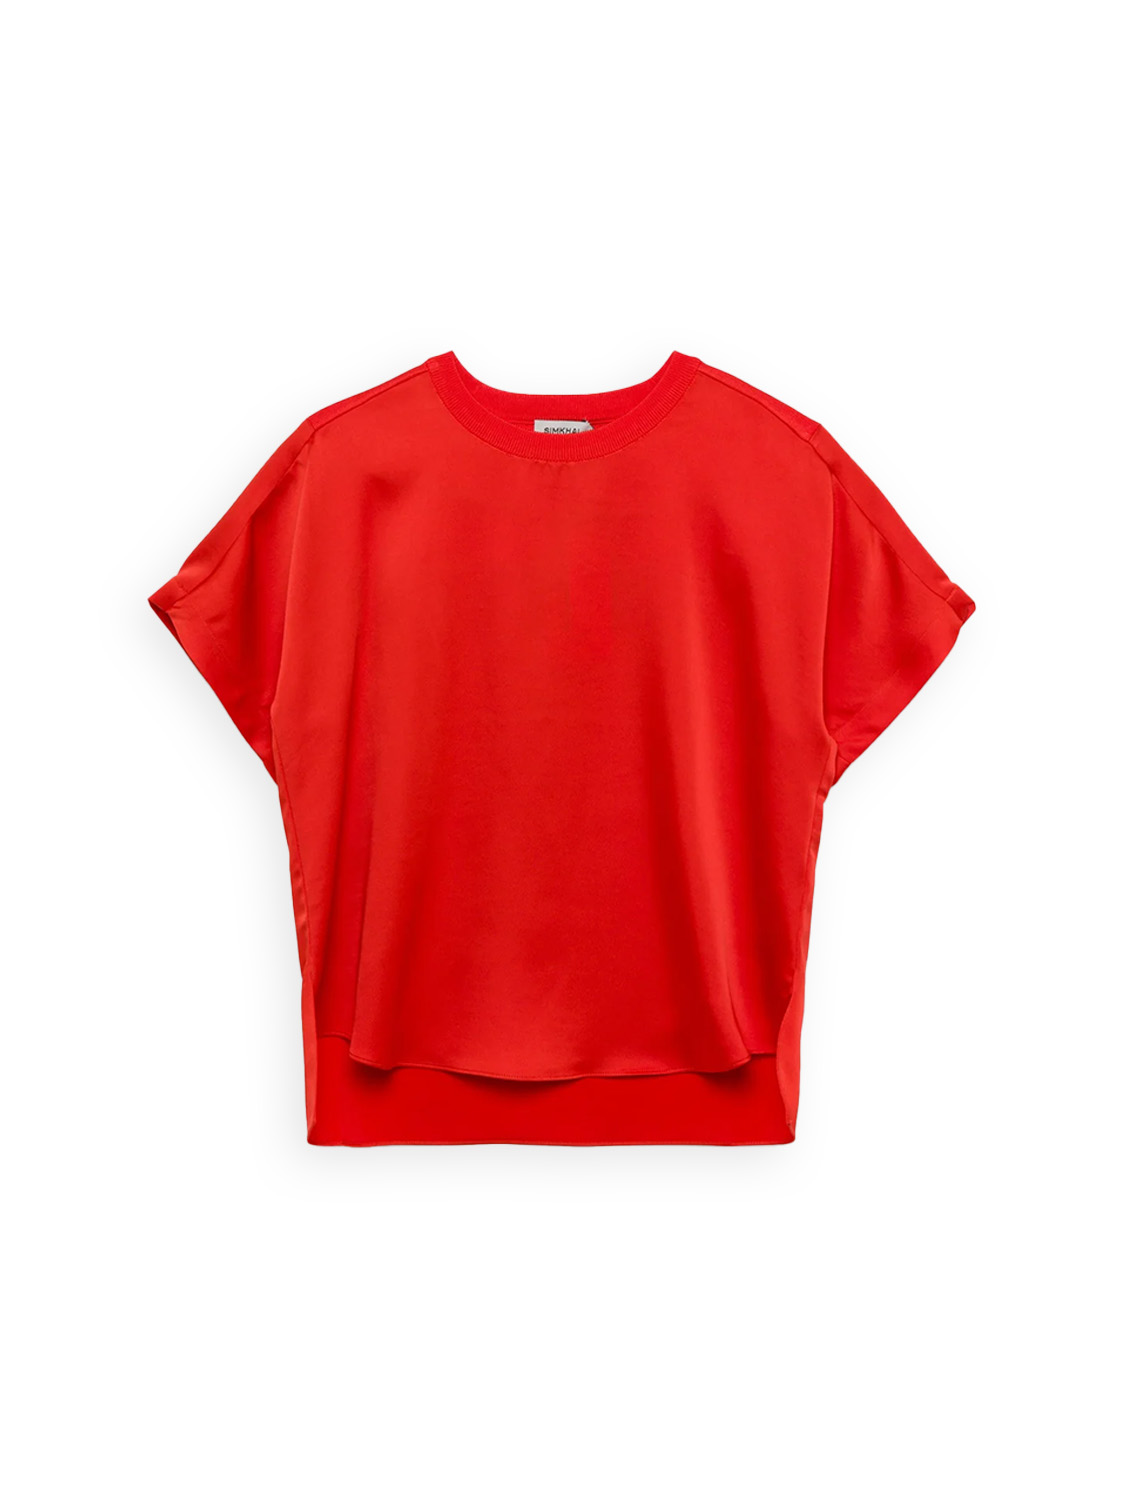 Simkhai Addy – T-Shirt mit gestricktem Rücken   rot S